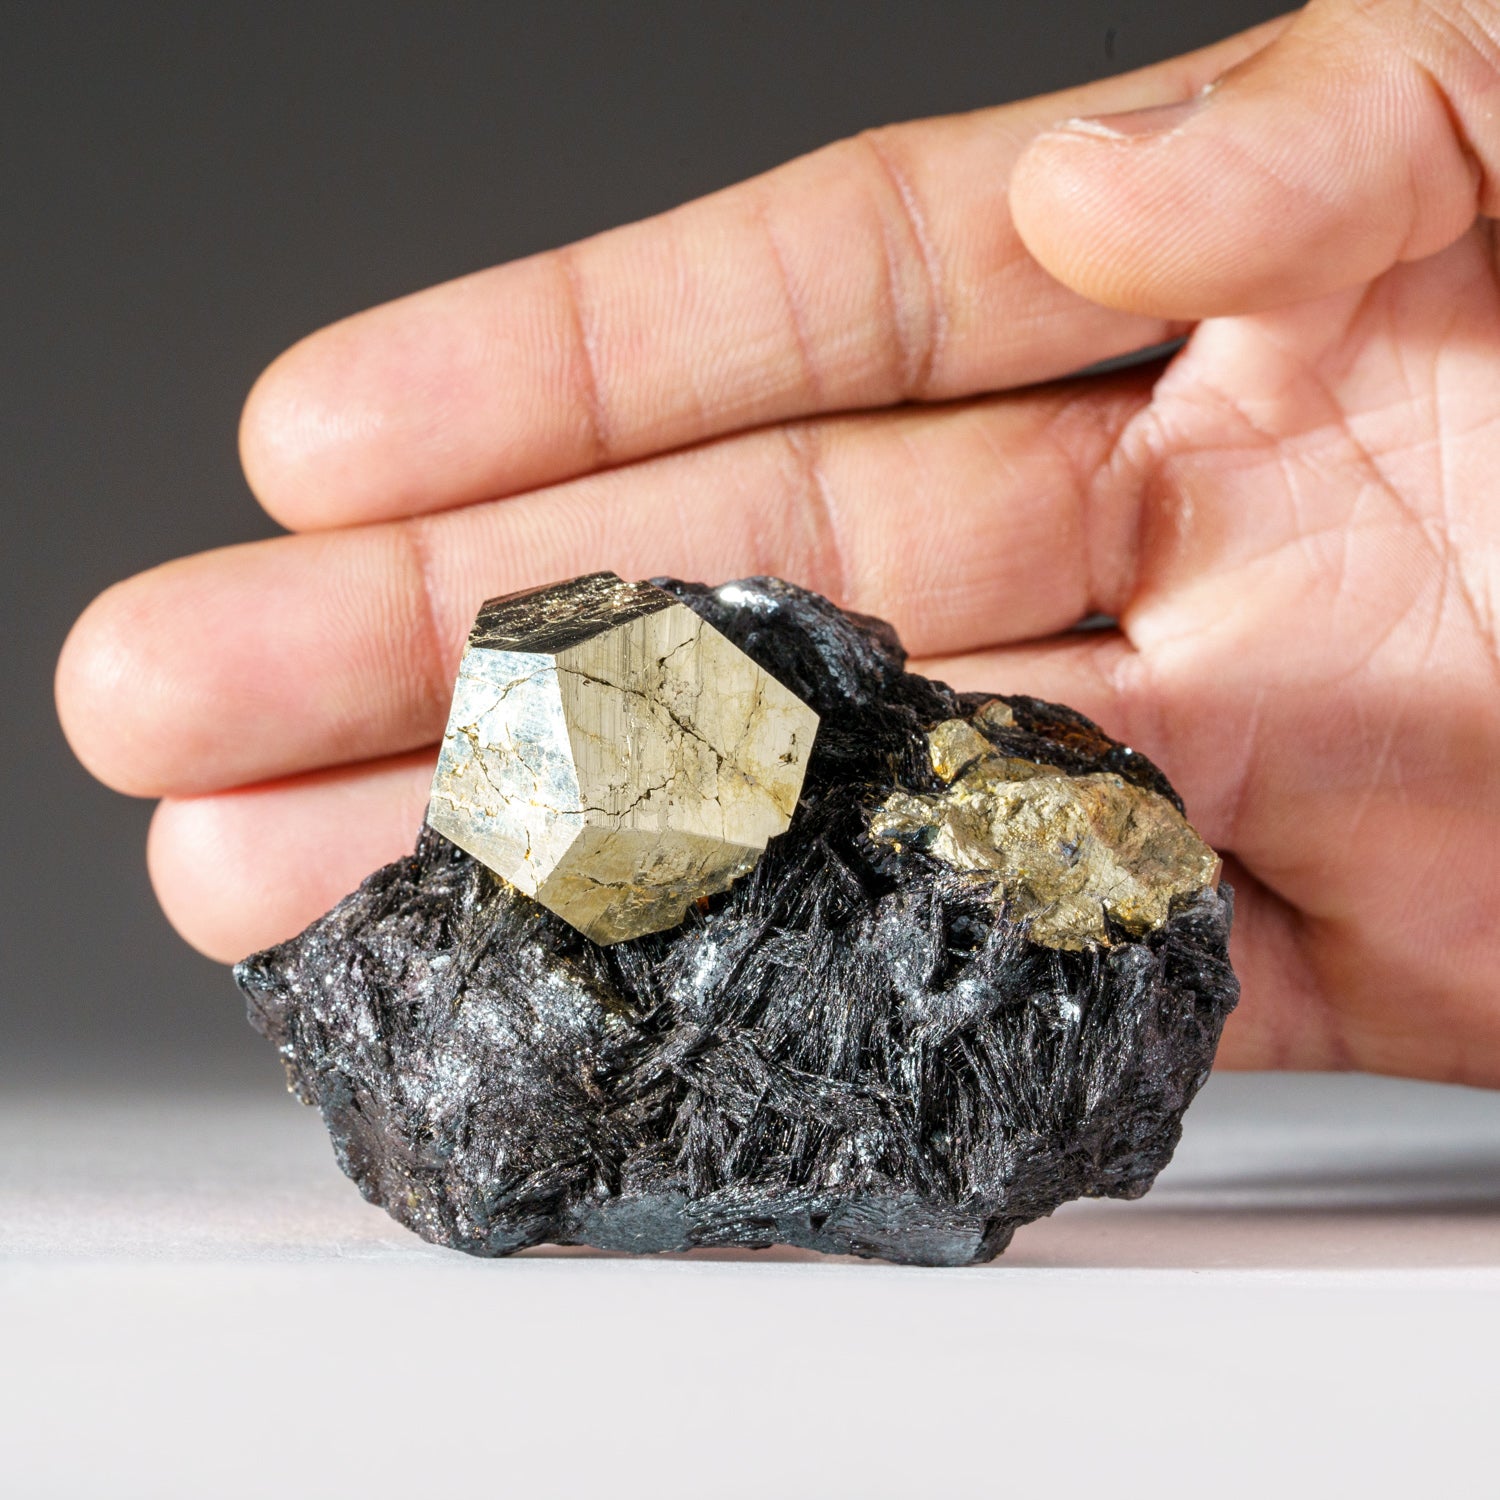 Pyrite on Hematite From Rio Marina, Elba Island, Livorno Province, Tuscany, Italy